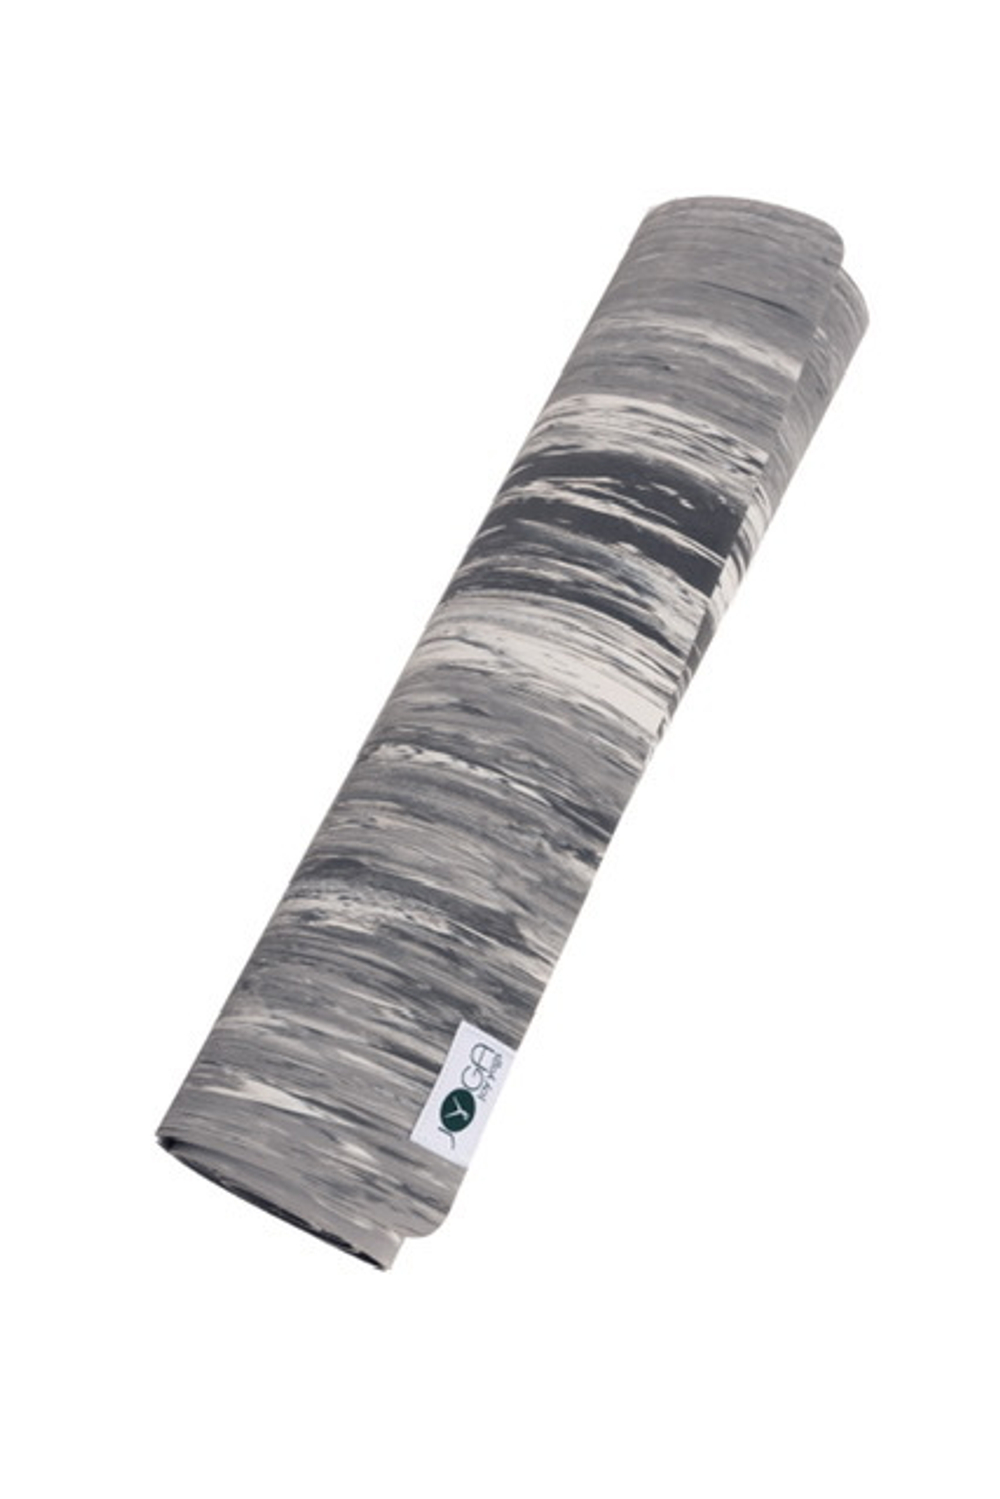 Каучуковый коврик для йоги  JOY Yoga Comfort  183*66*0,4 см, серый мрамор